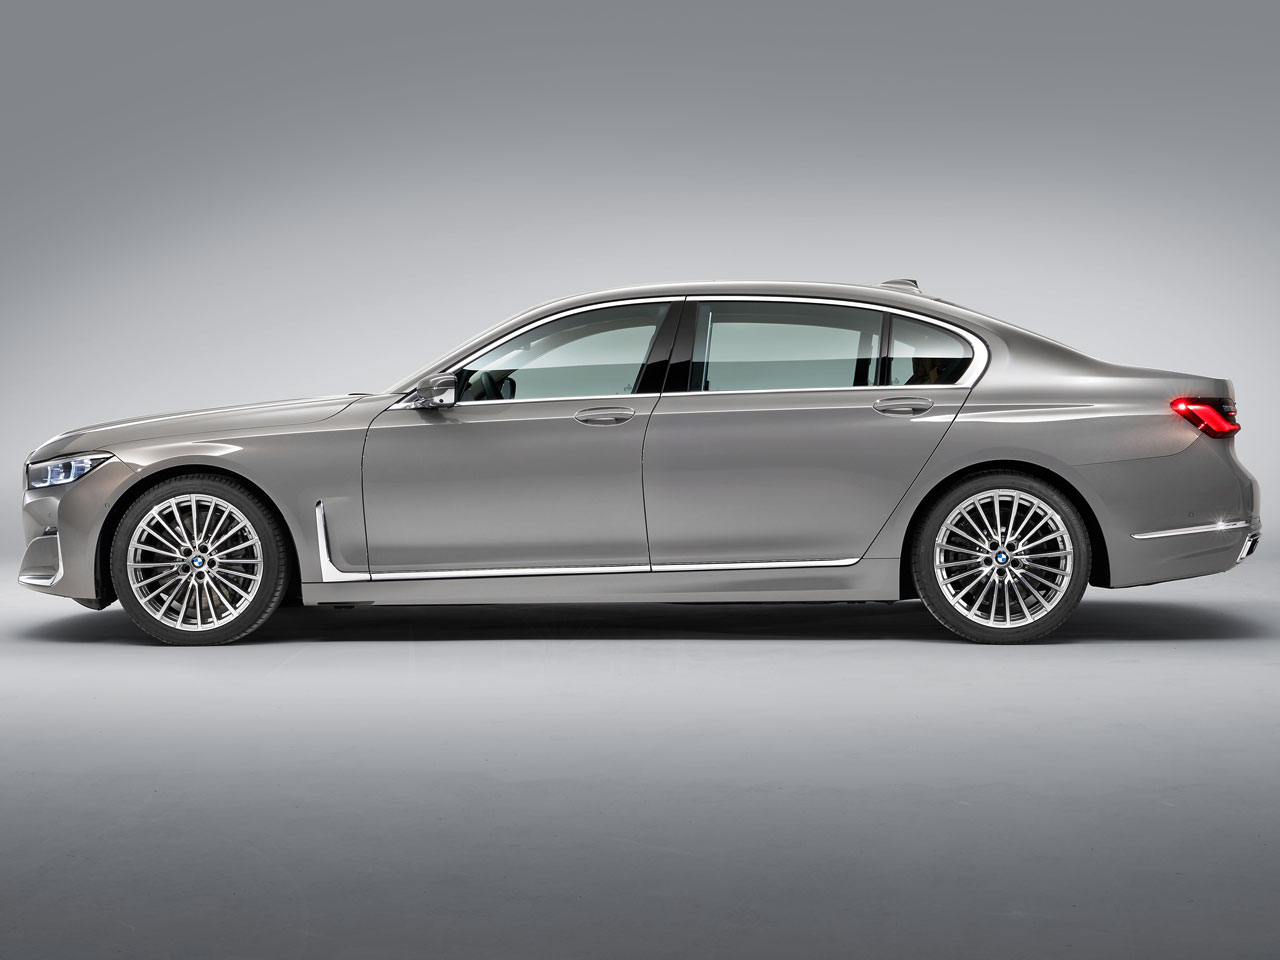 BMW 7シリーズ セダン 2015年モデル 740d xDrive Luxuryの価格・性能 